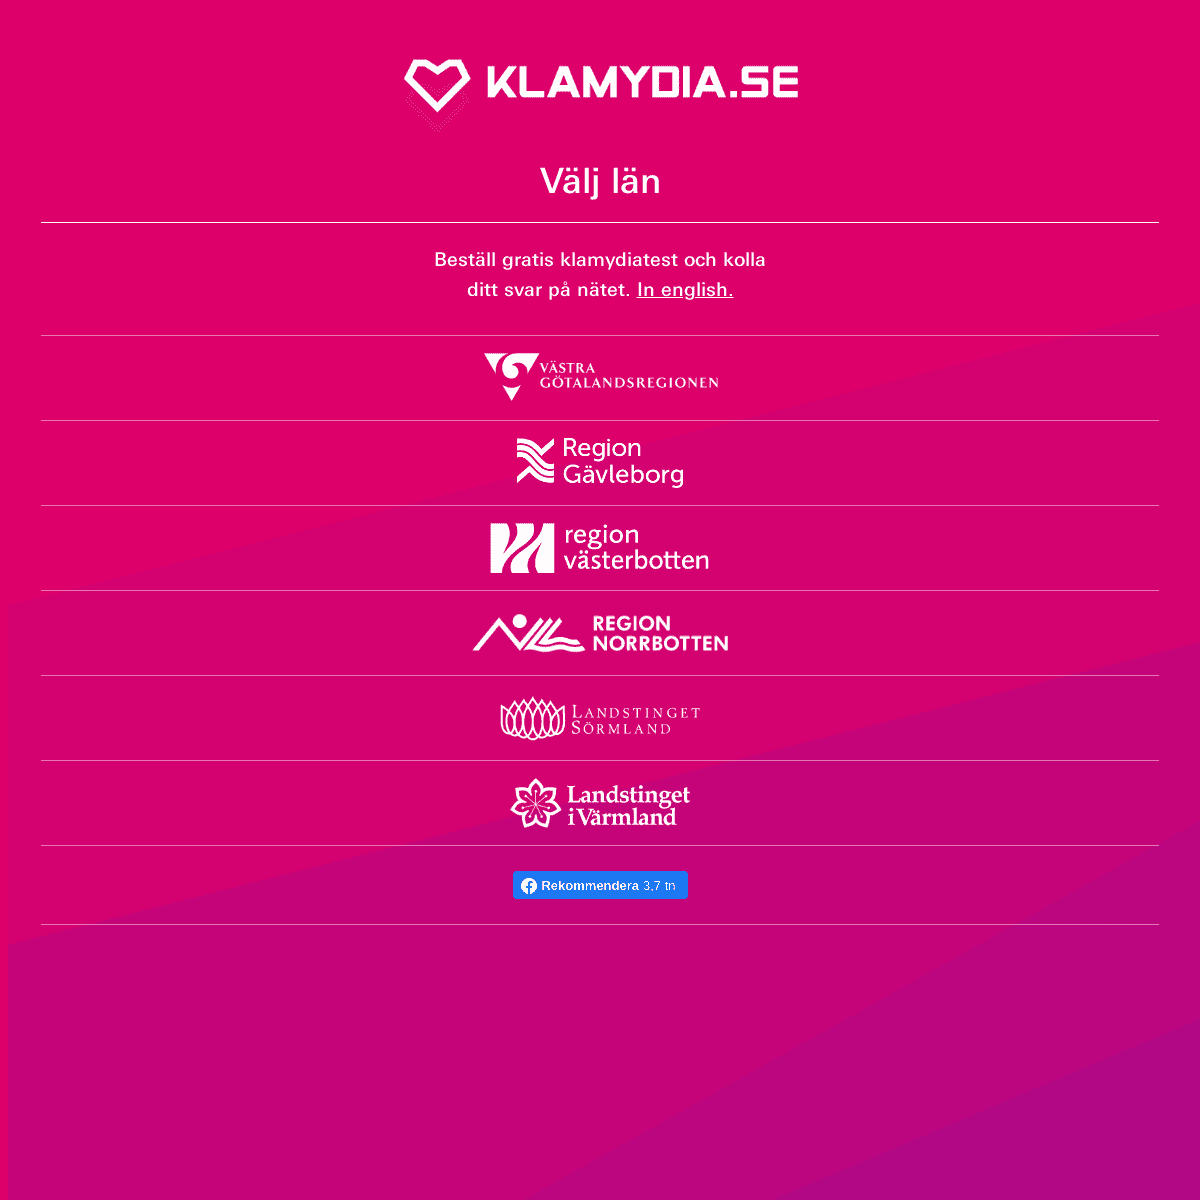 A complete backup of klamydia.se